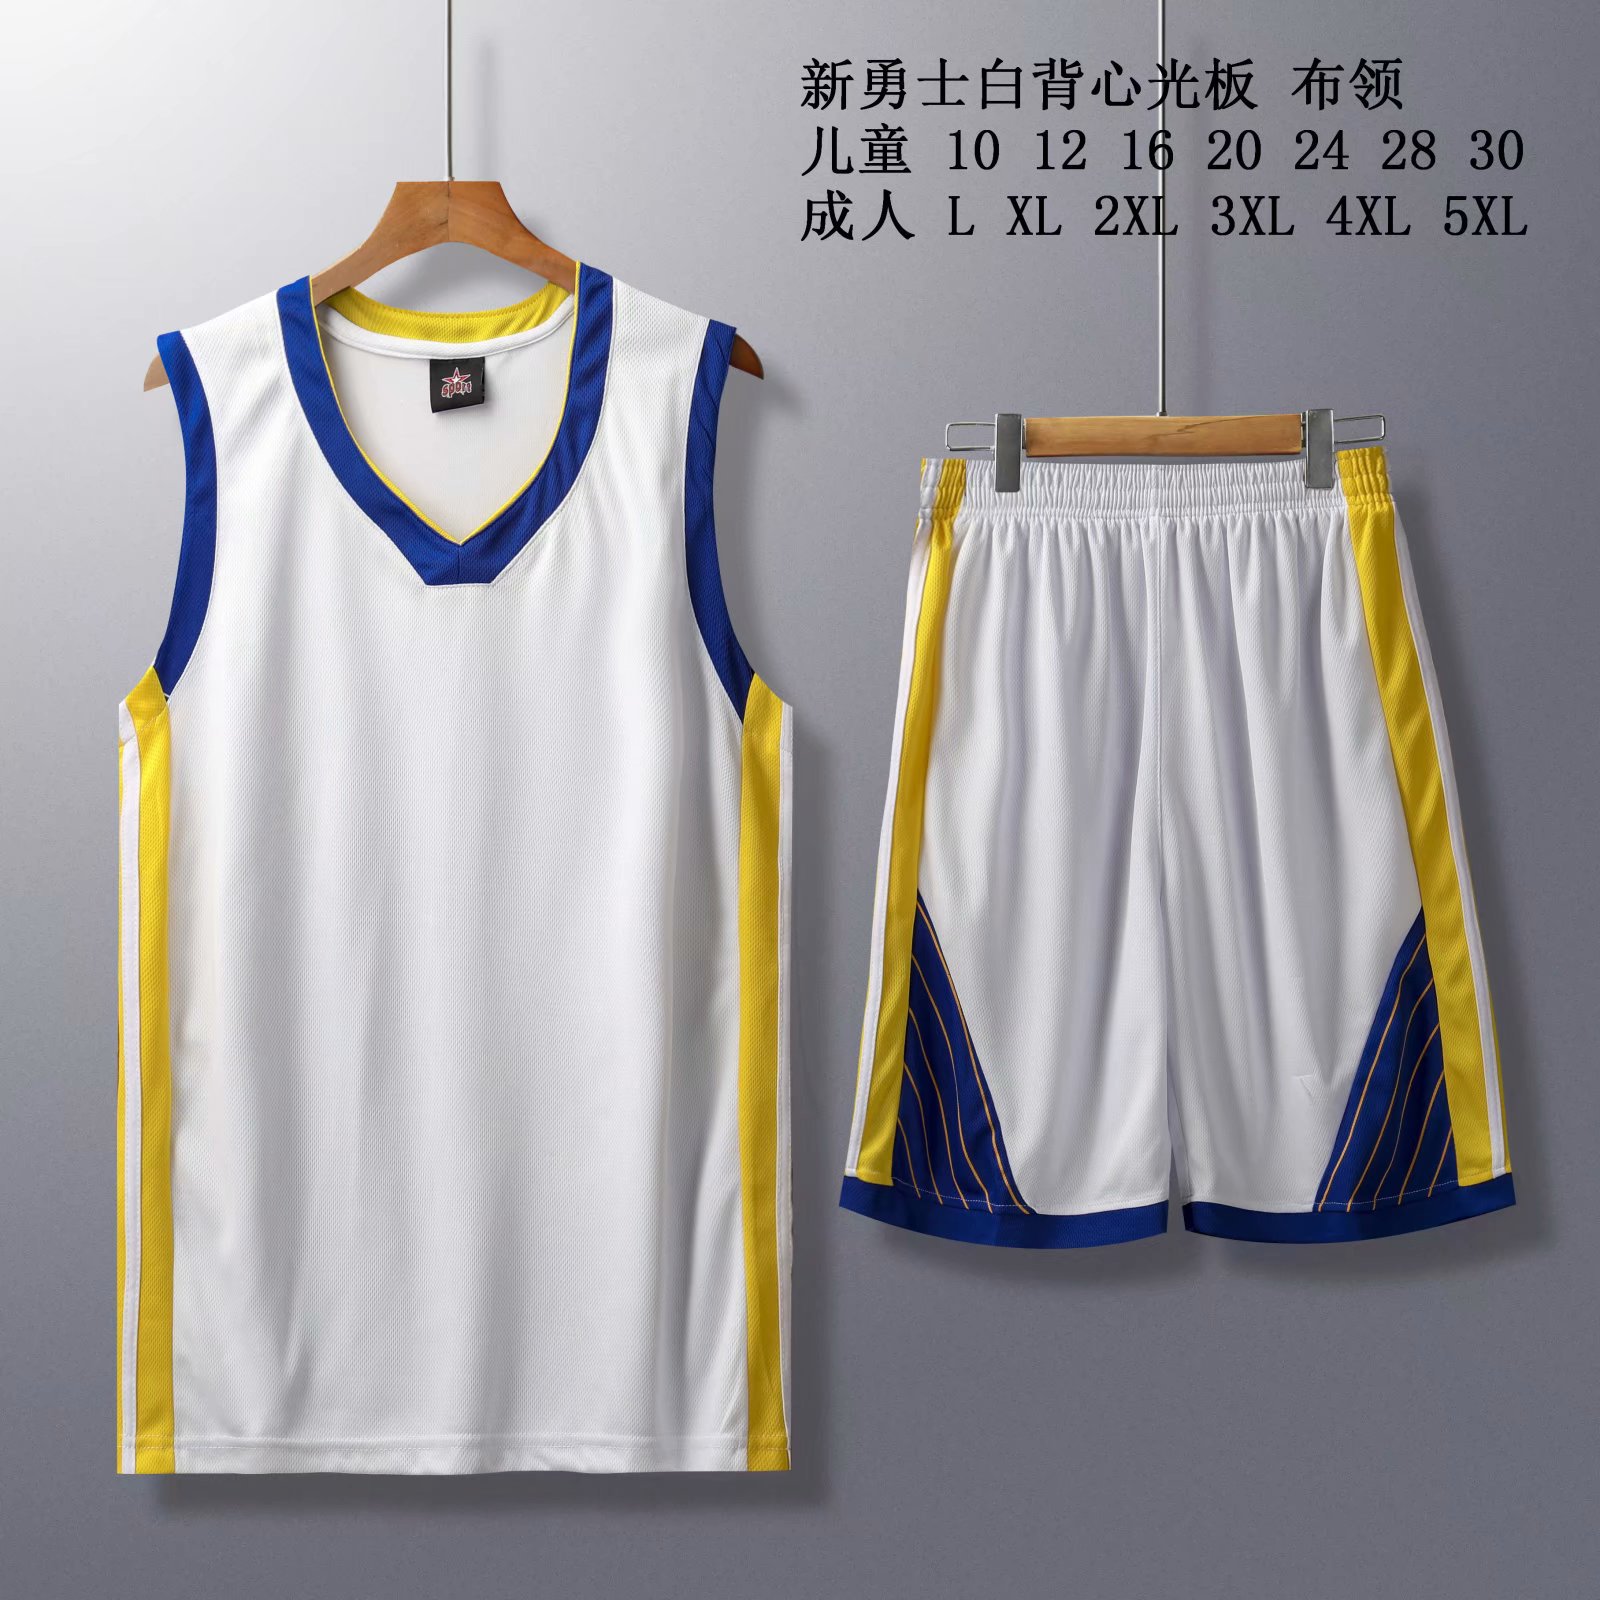 篮球服女连衣裙哪种牌子比较好 价格